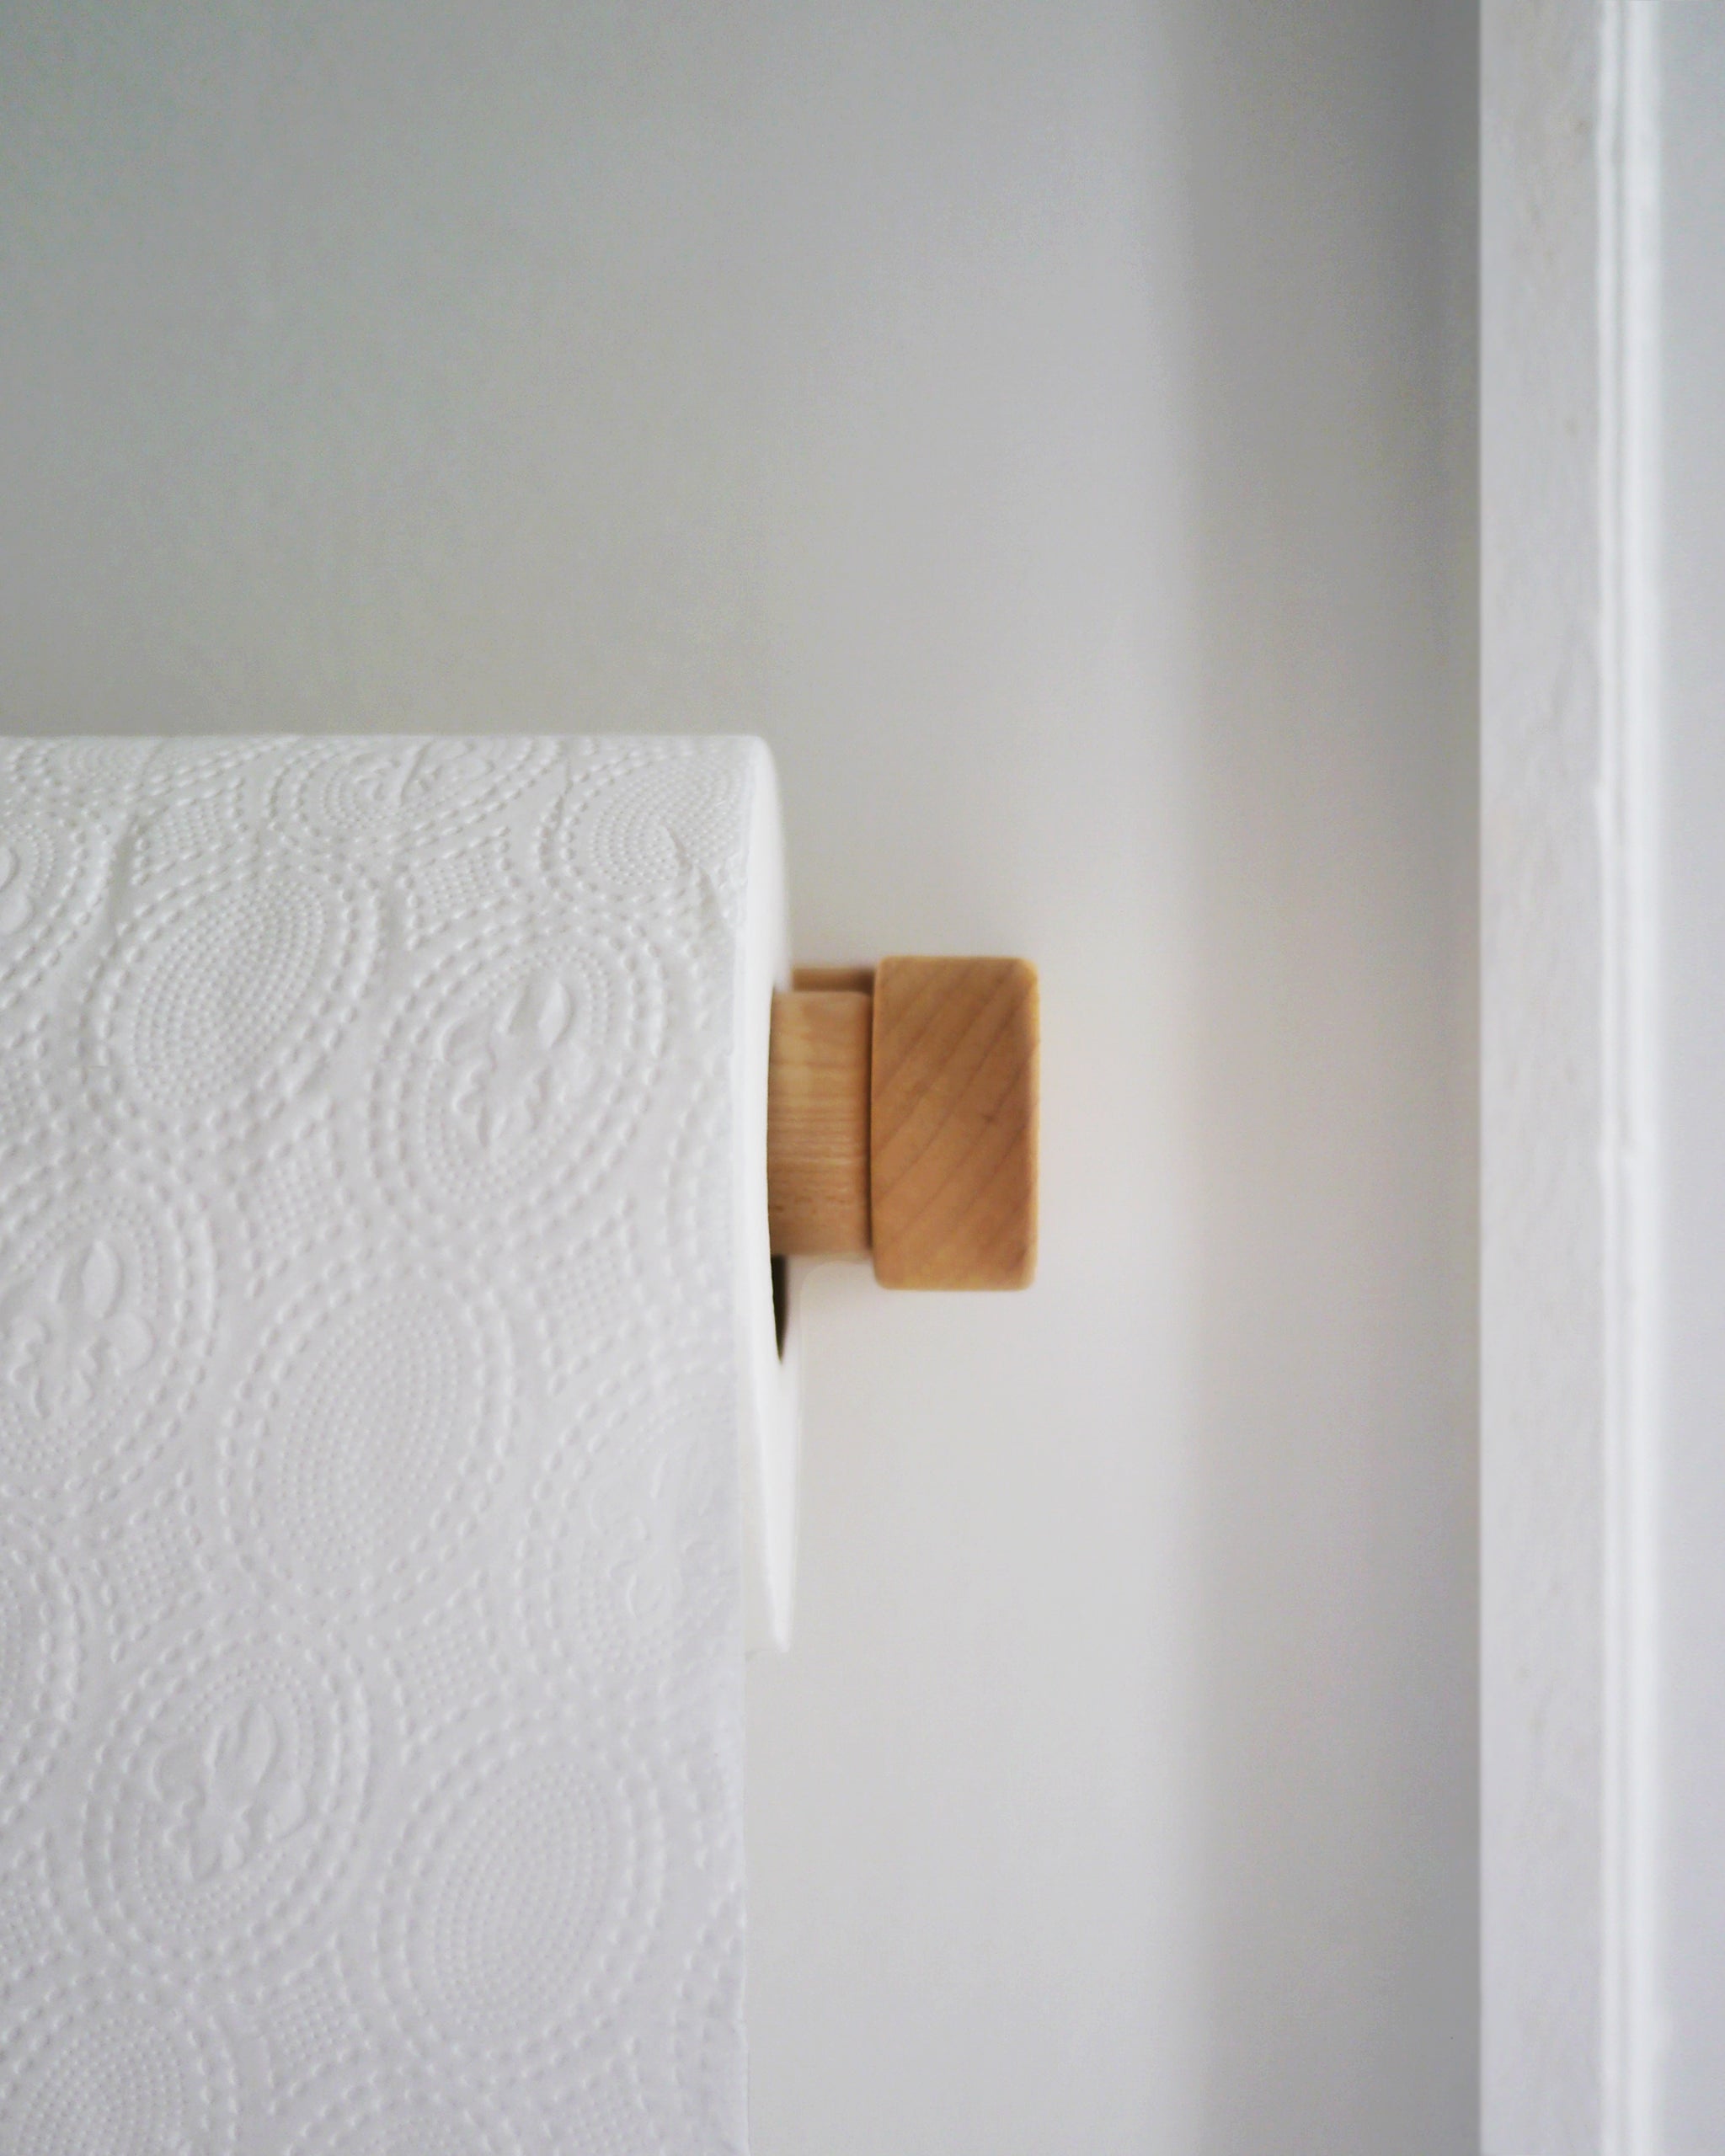 Wood Toilet Roll Holder - Maple – Nalata Nalata